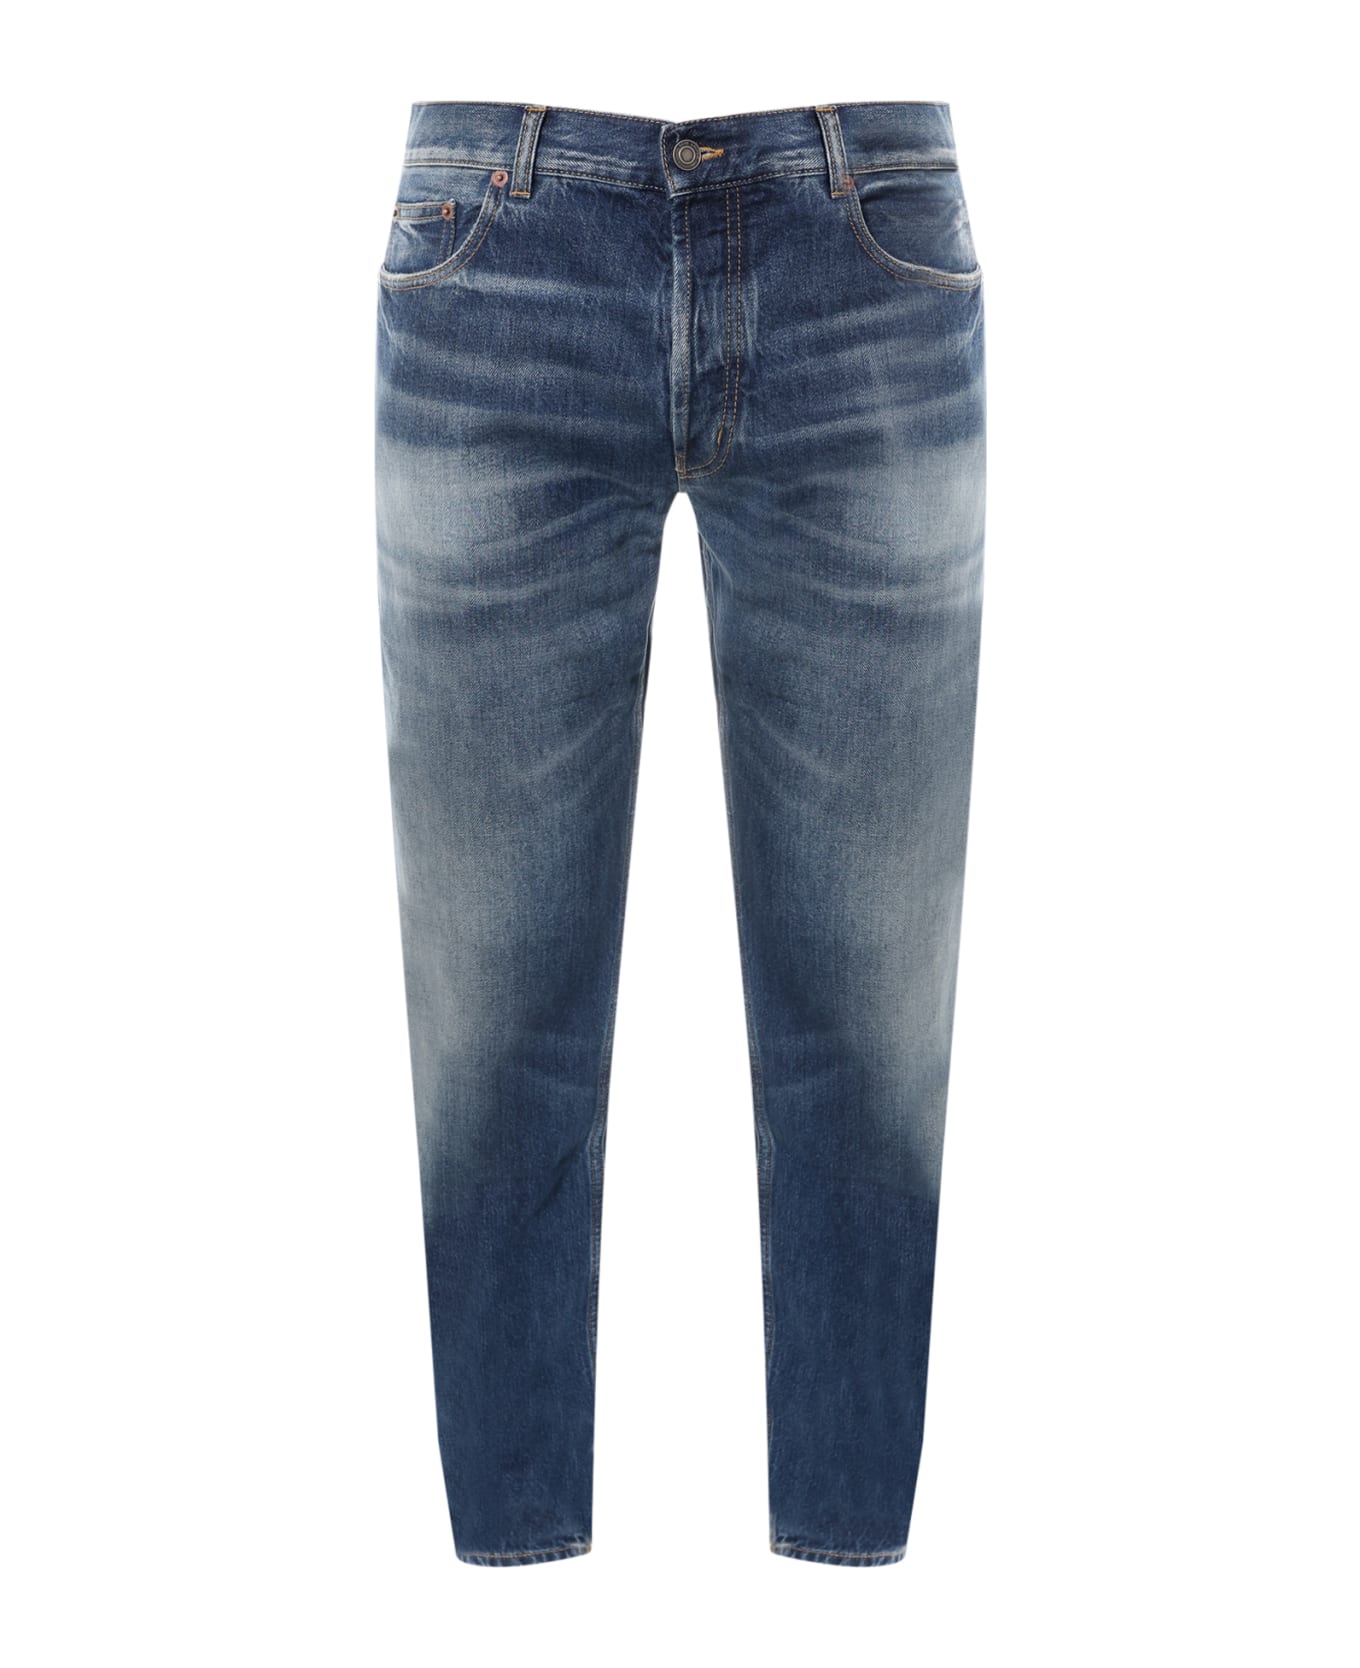 Saint Laurent Deauville Cotton Jeans - Blue デニム